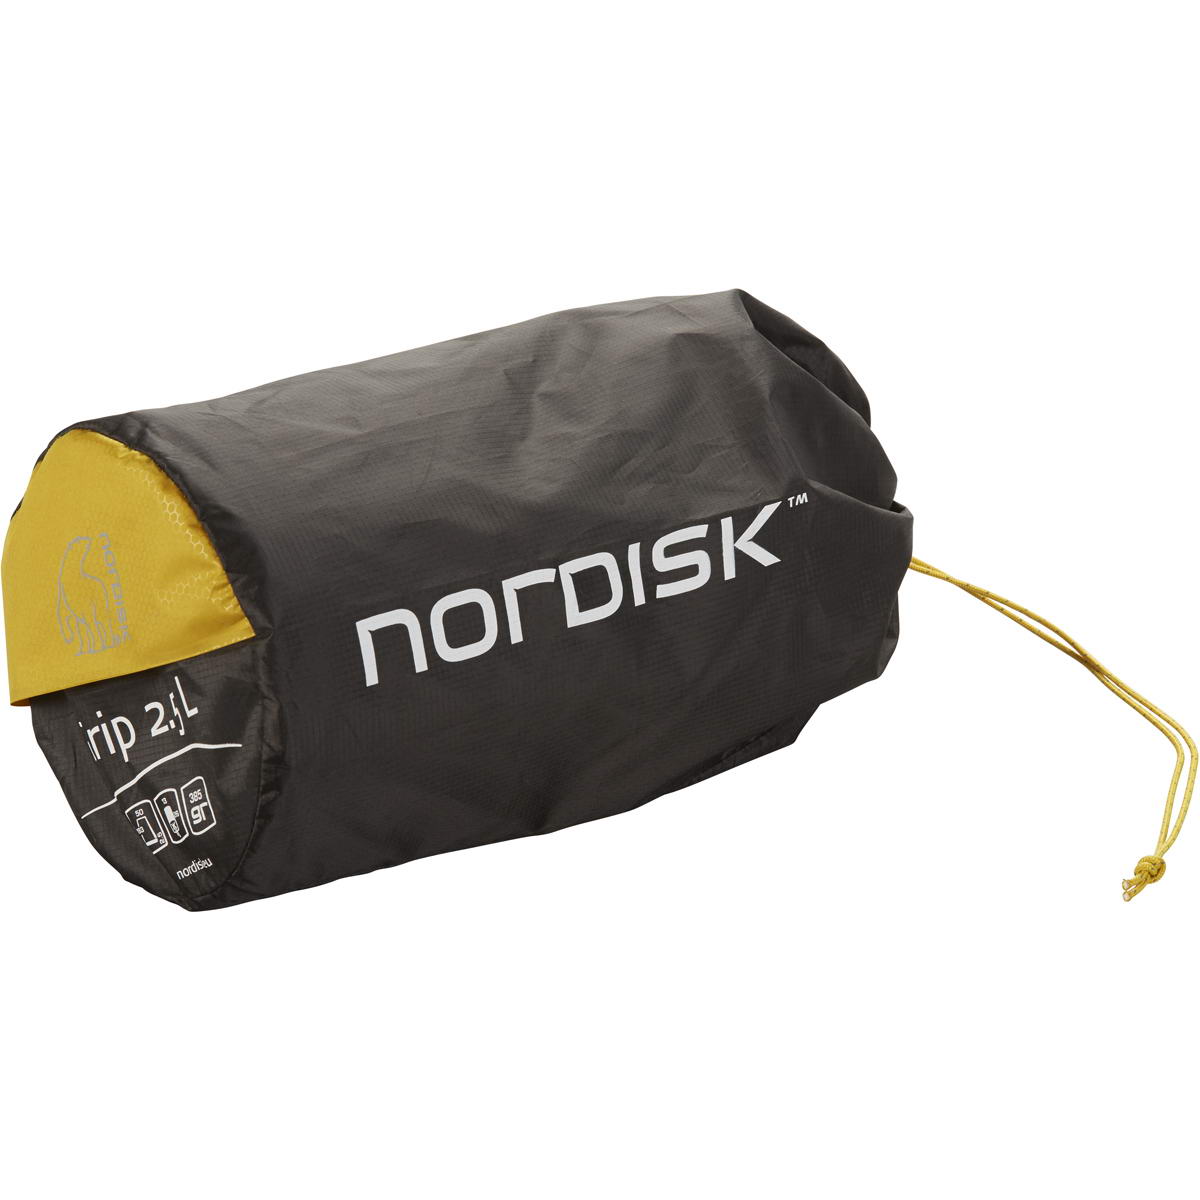 Nordisk Grip 2.5 cm - R